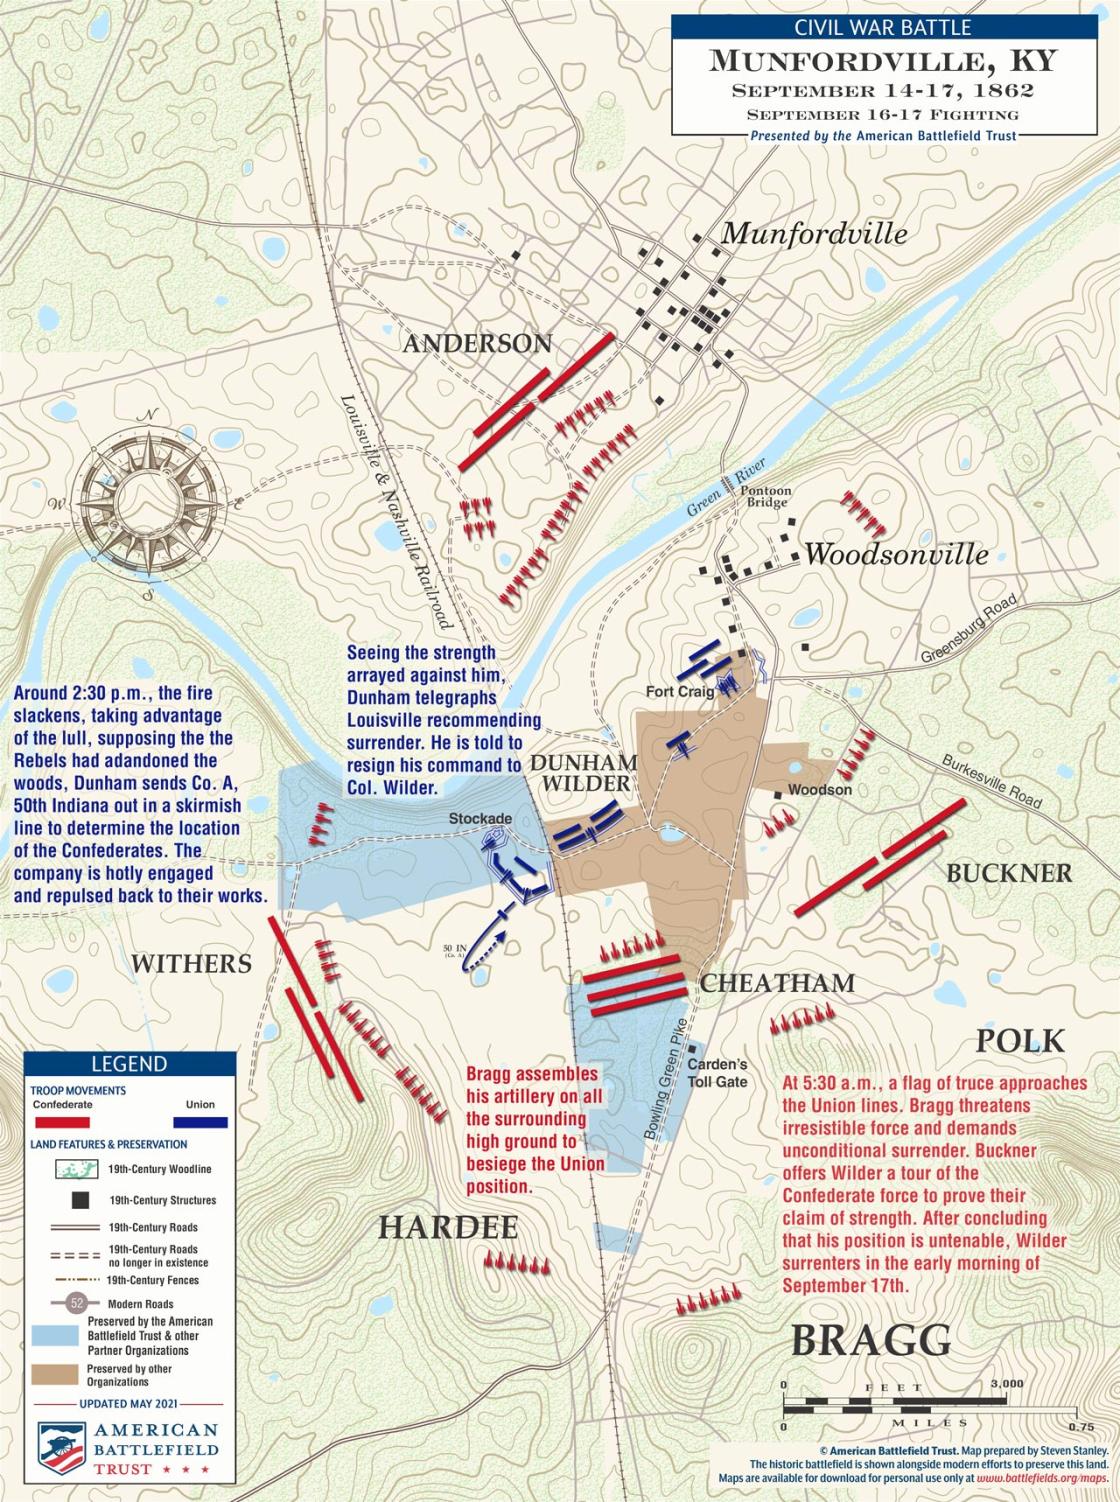 Munfordville | Sept 16-17, 1862 Battle Map